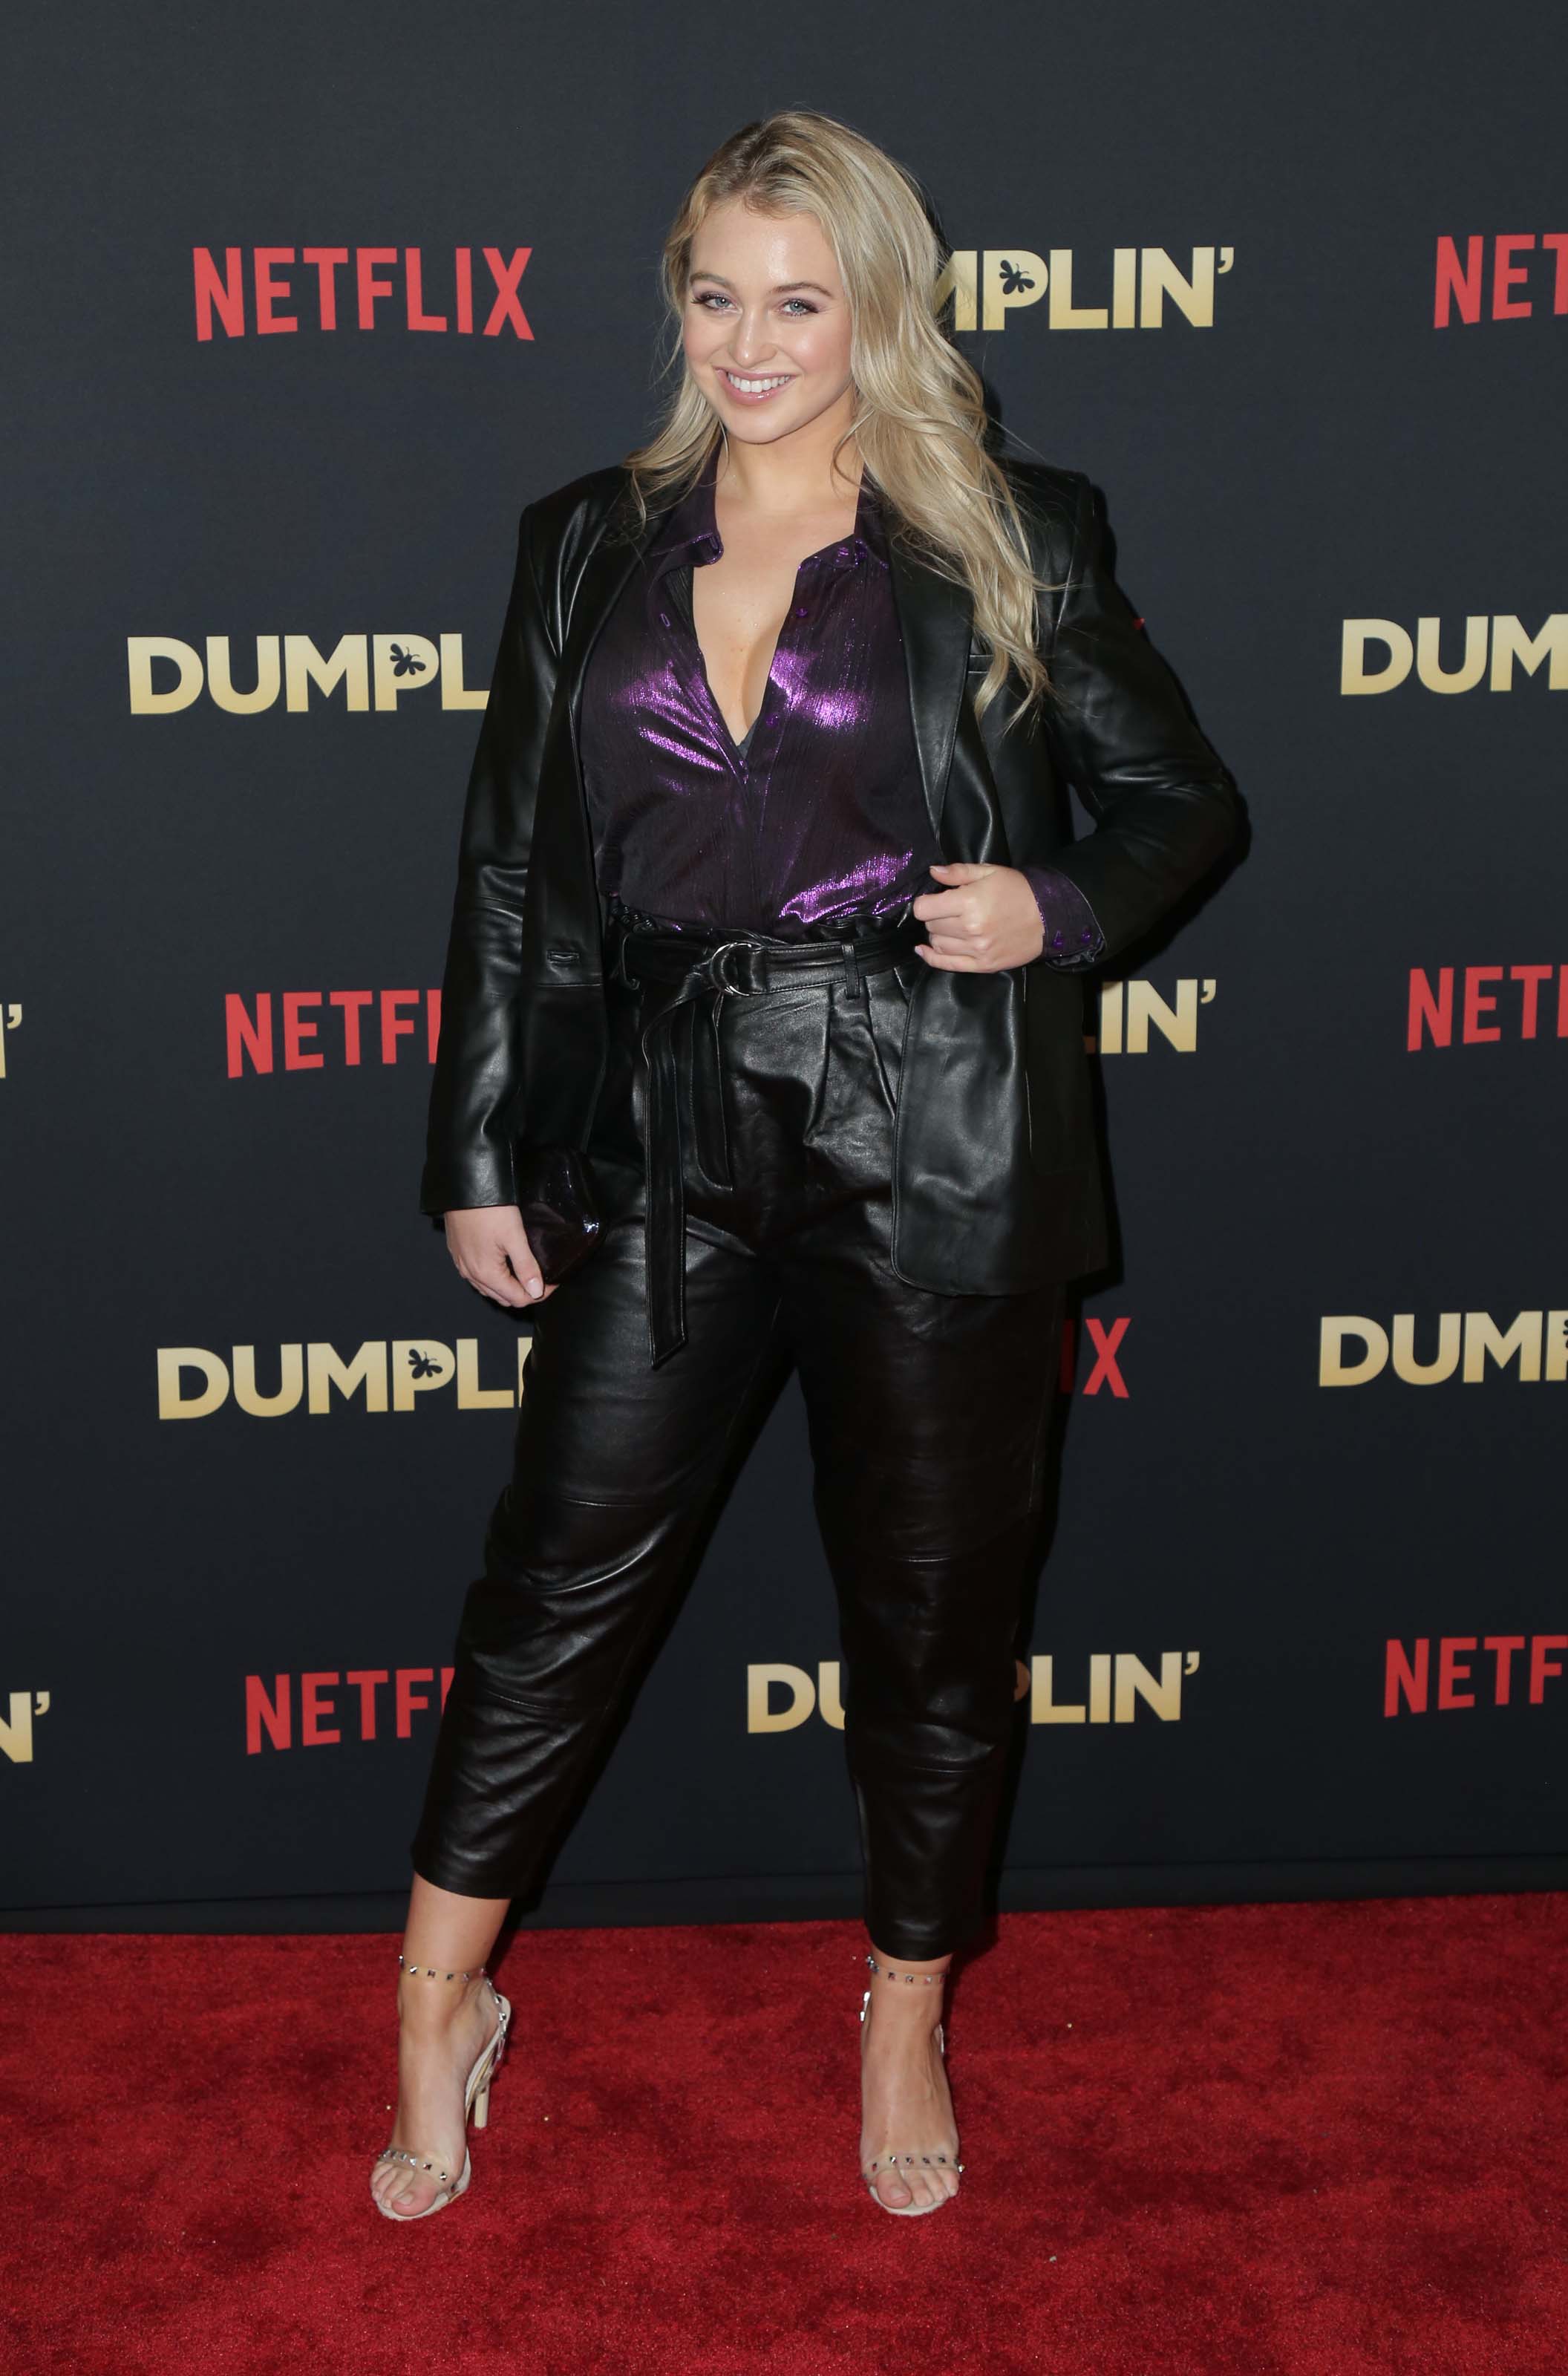 Iskra Lawrence attends Premiere of Netflix’s ‘Dumplin’